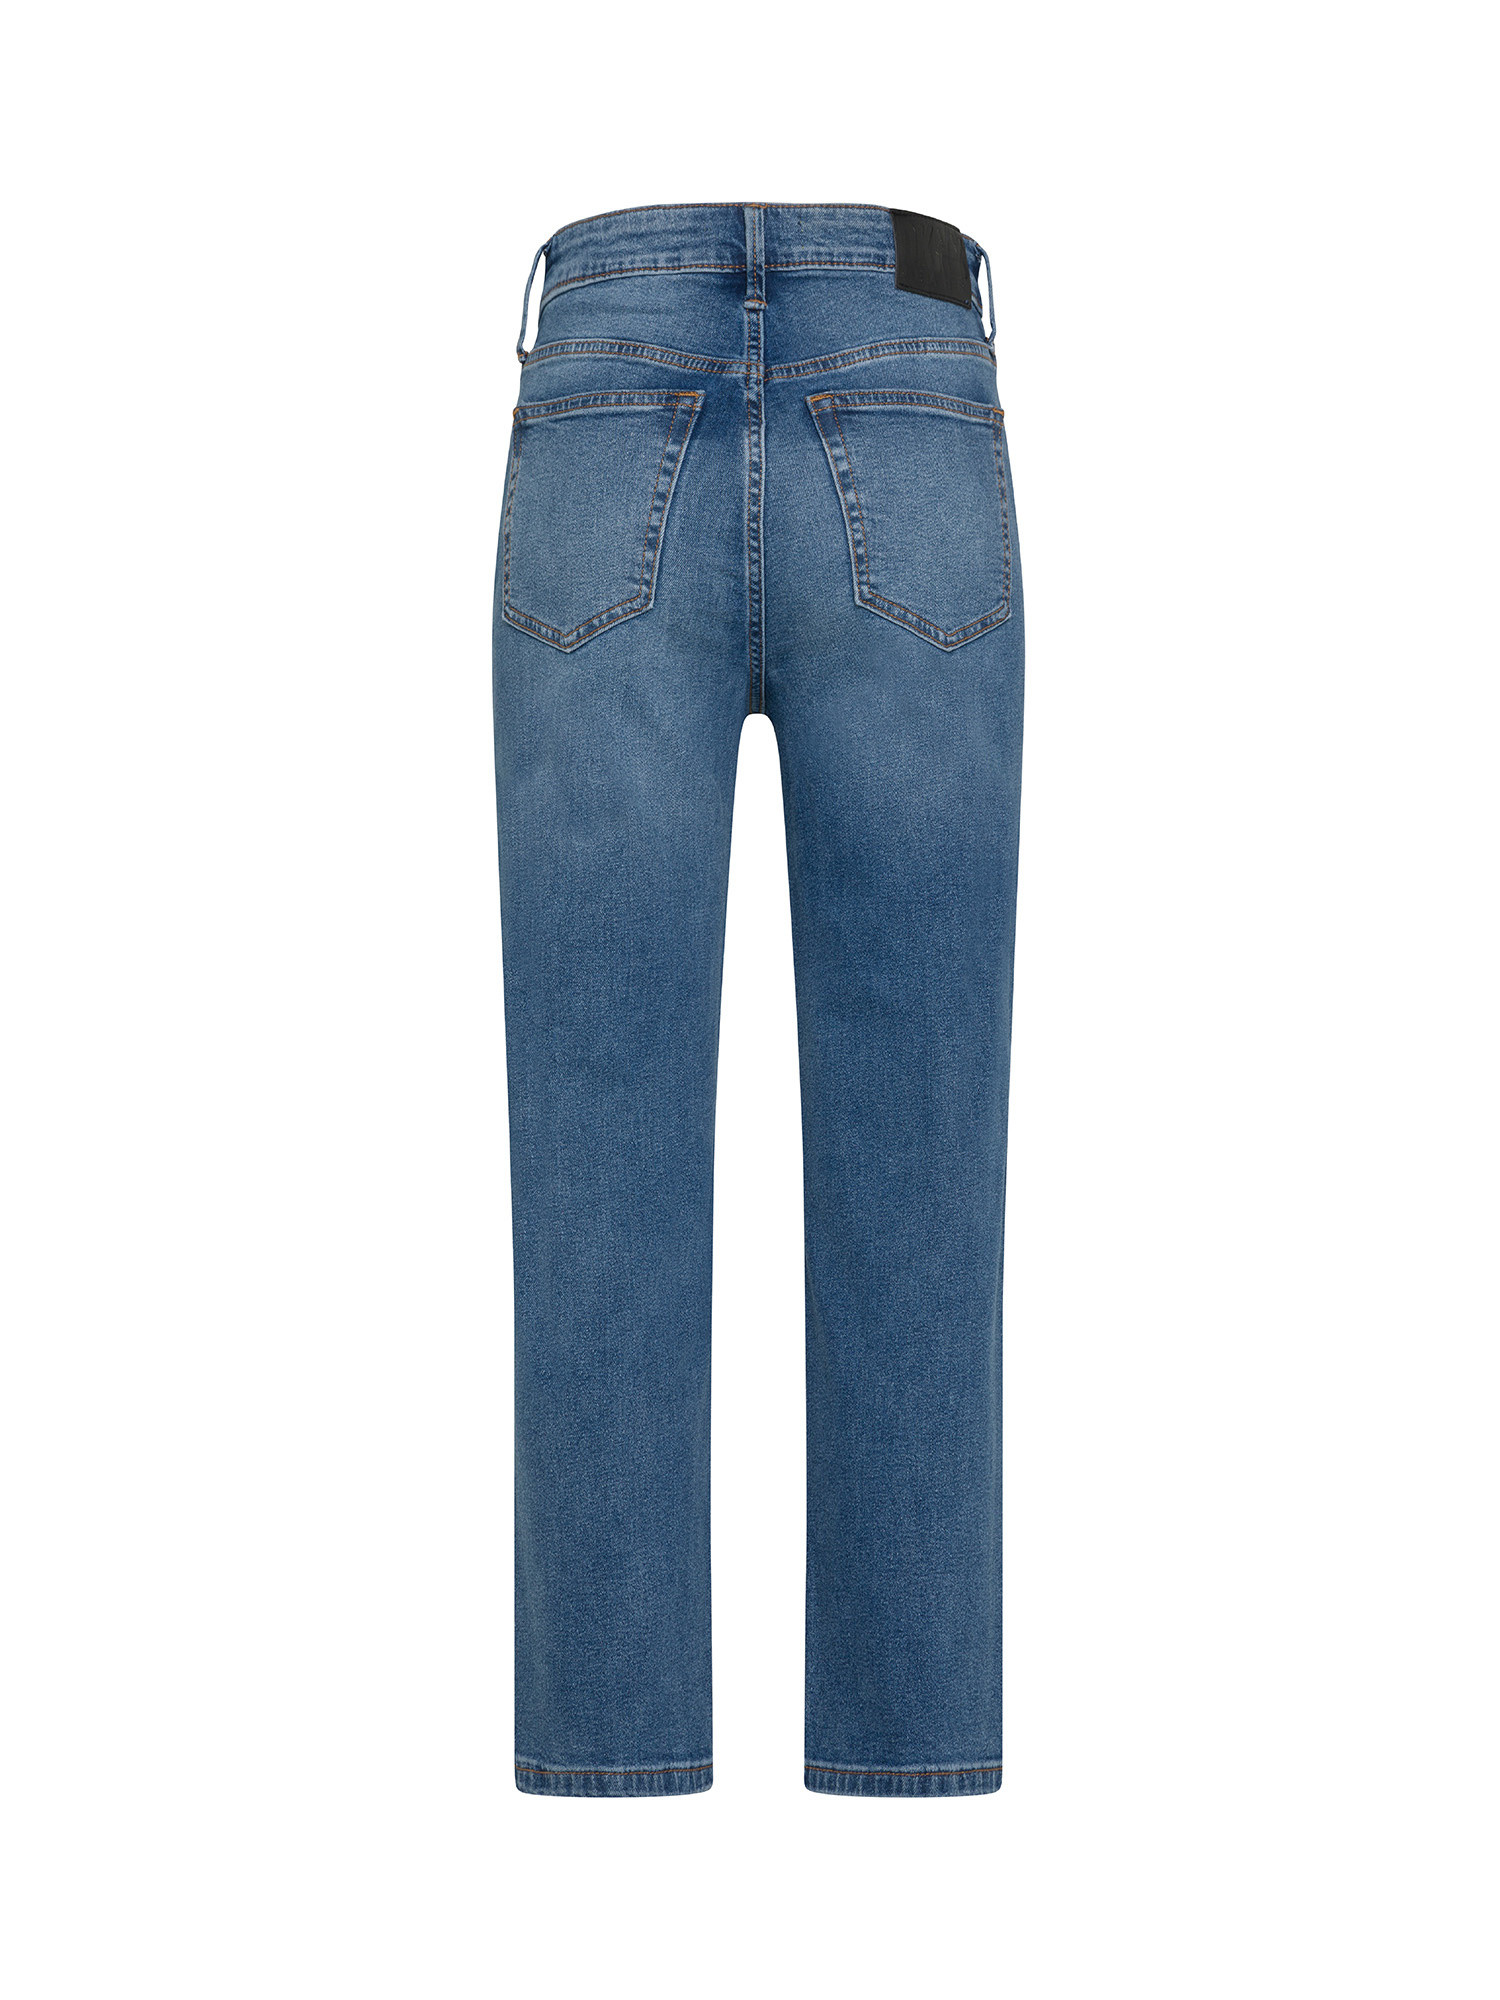 DKNY - Jeans a vita alta con taglio dritto e leggermente cropped, Denim, large image number 1